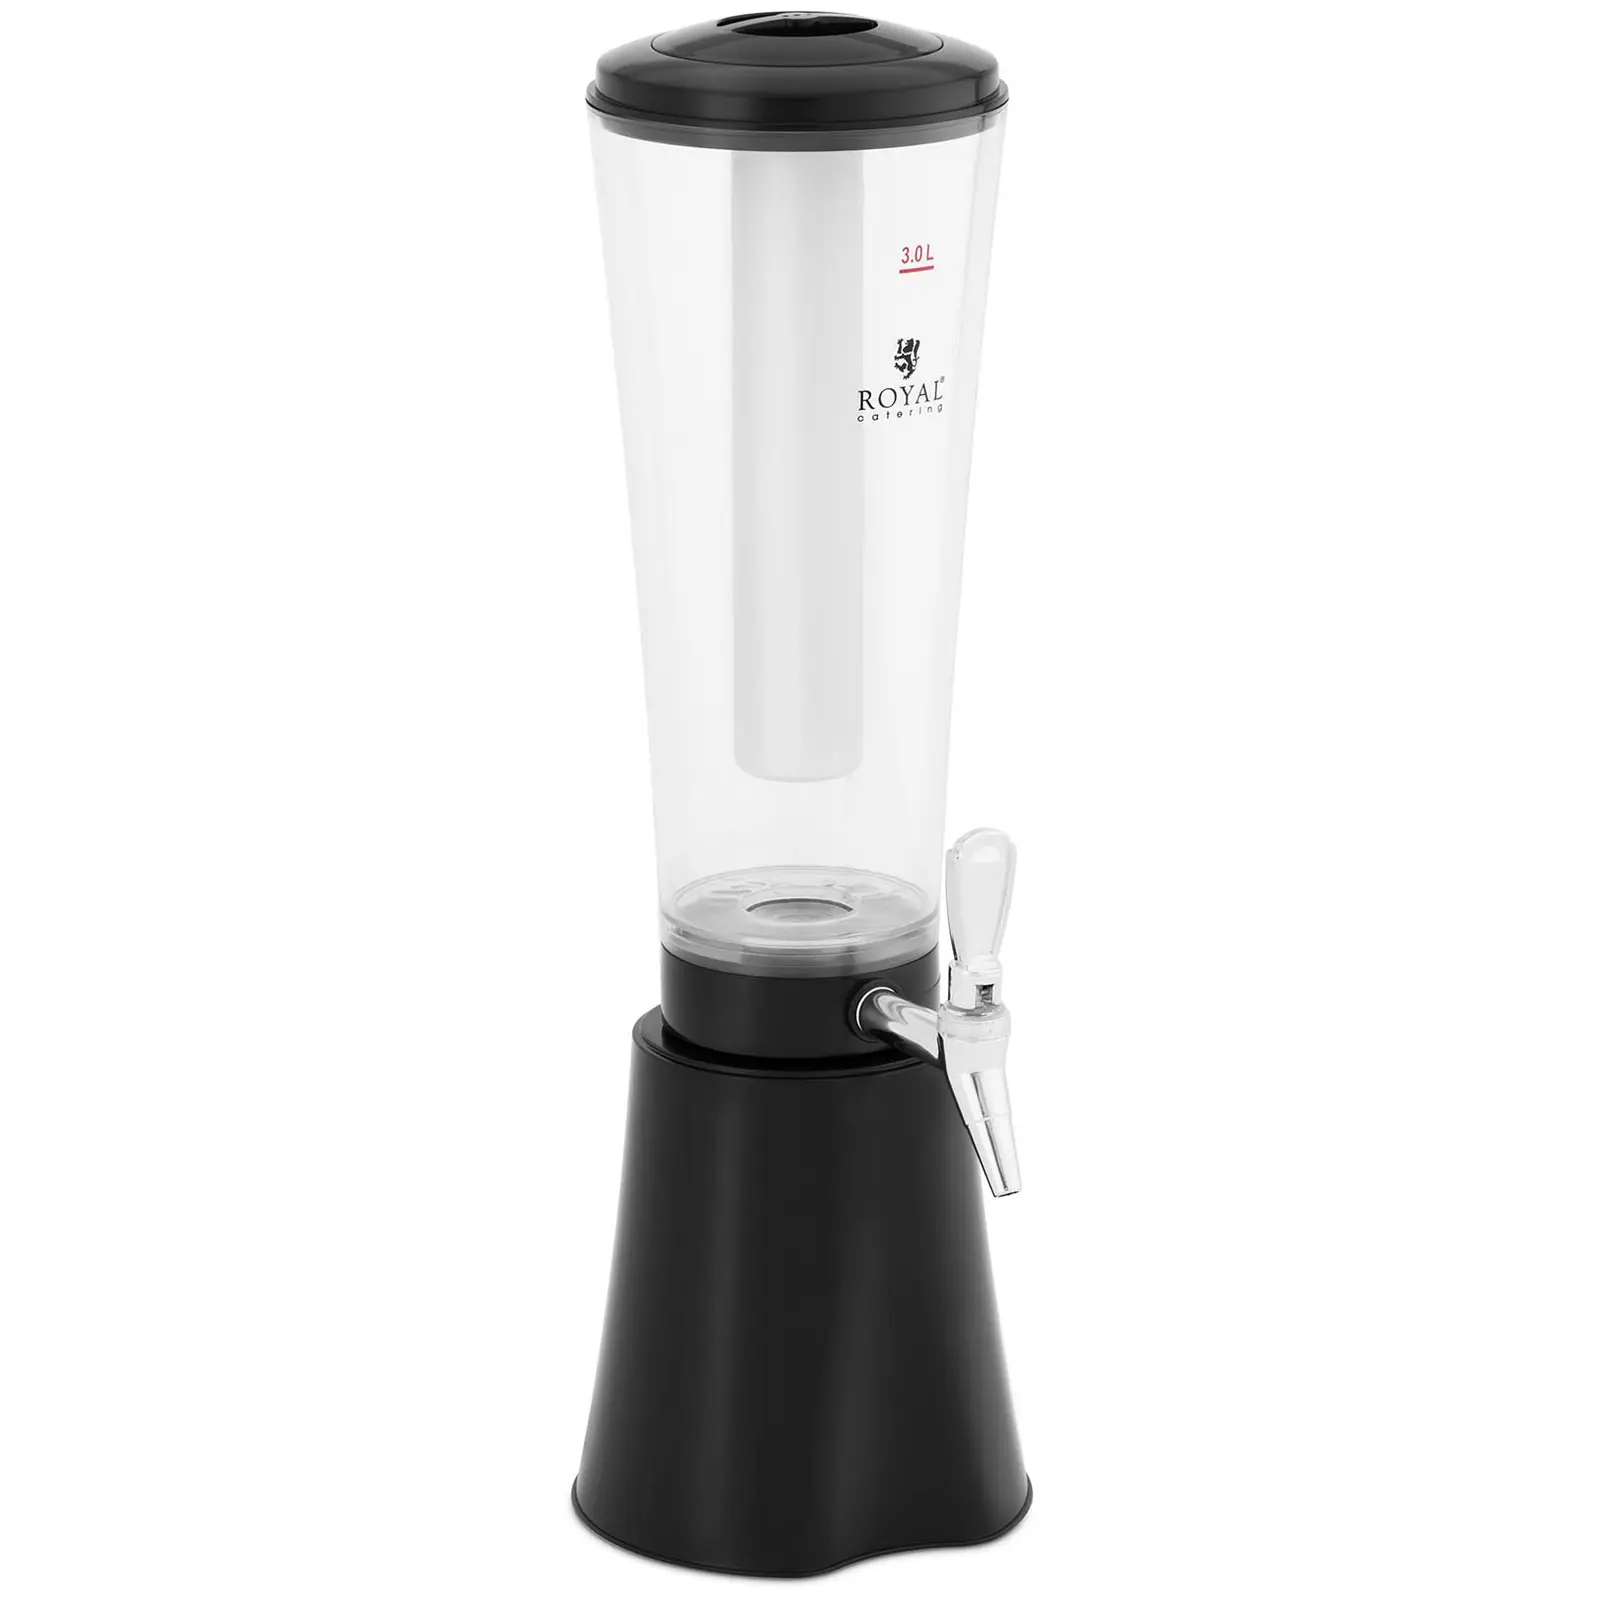 Dispensador de bebidas frías - 3 L - sistema de enfriamiento - para vasos hasta 163 mm - iluminación LED - negro - Royal Catering